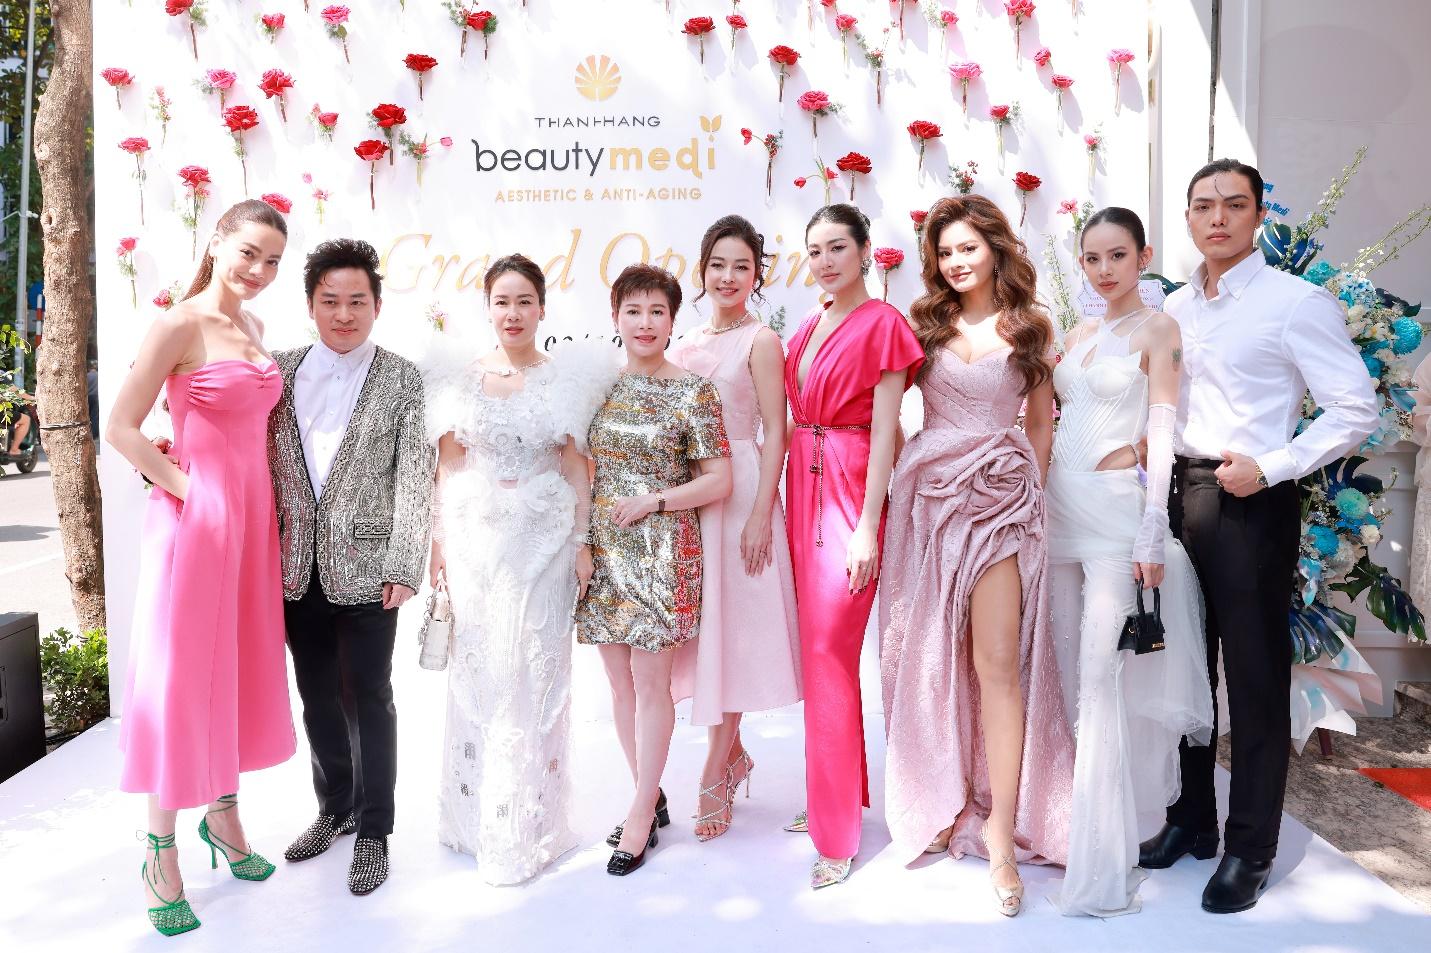 Dàn sao Việt bất ngờ với trụ sở mới sang trọng và đẳng cấp của Thanh Hằng Beauty Medi - ảnh 6